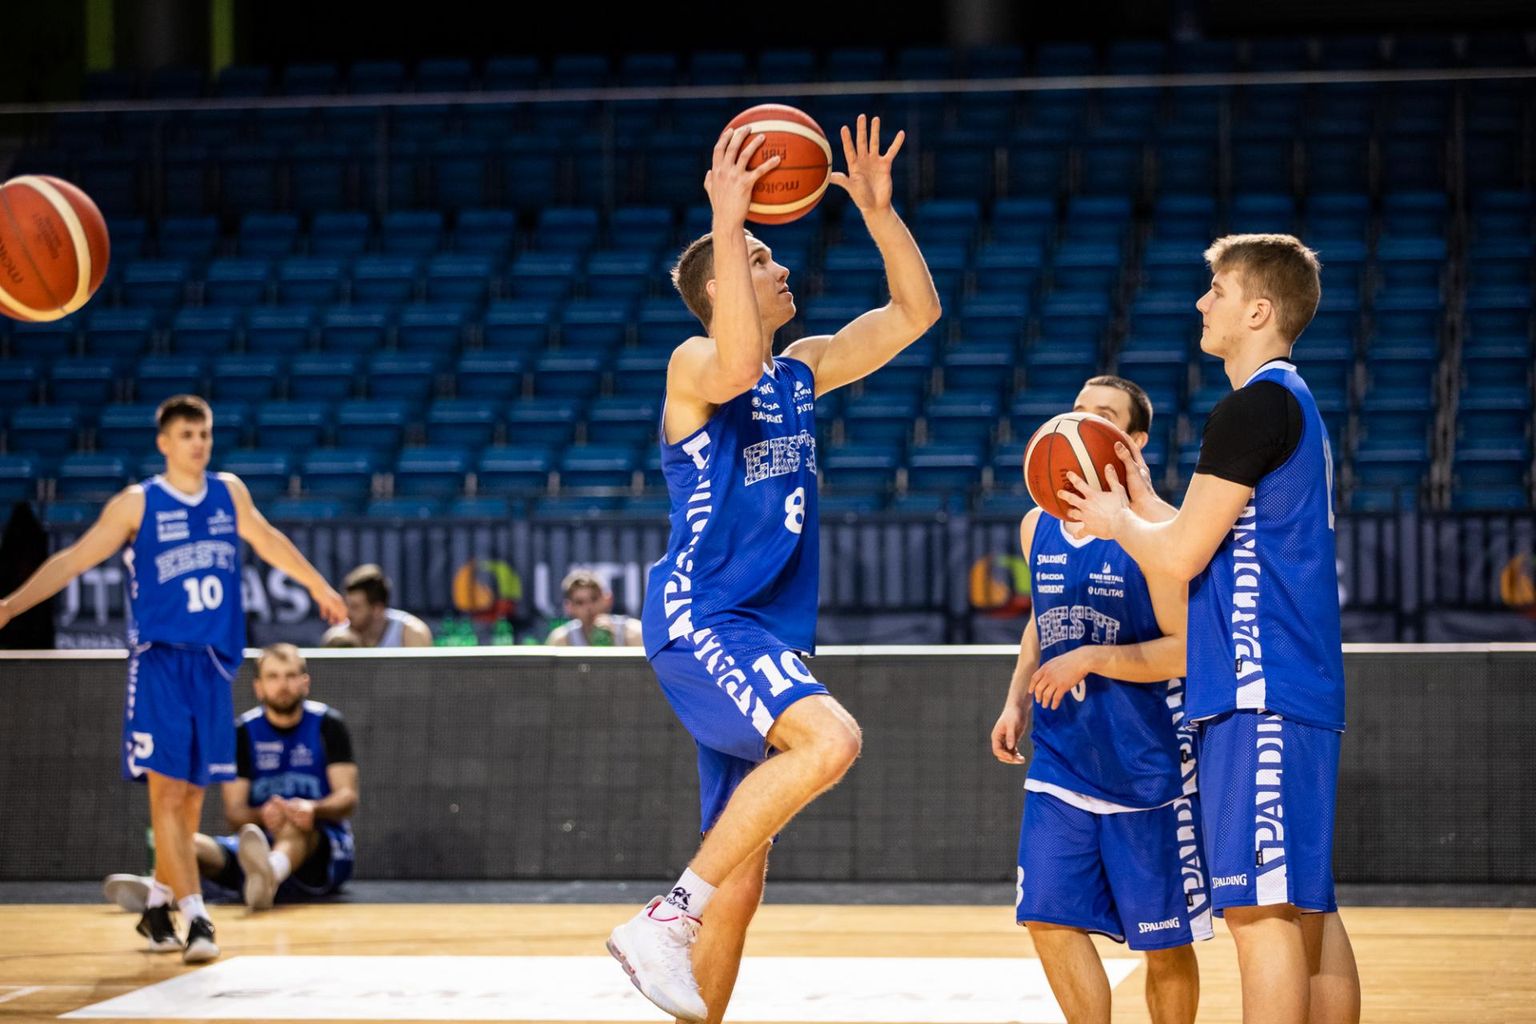 Eesti korvpalli karikavõistluste loosimine korraldatakse Tallinnas Saku suurhallis, kus asub alaliidu kontor ning harjutab ja mängib rahvusmeeskond.